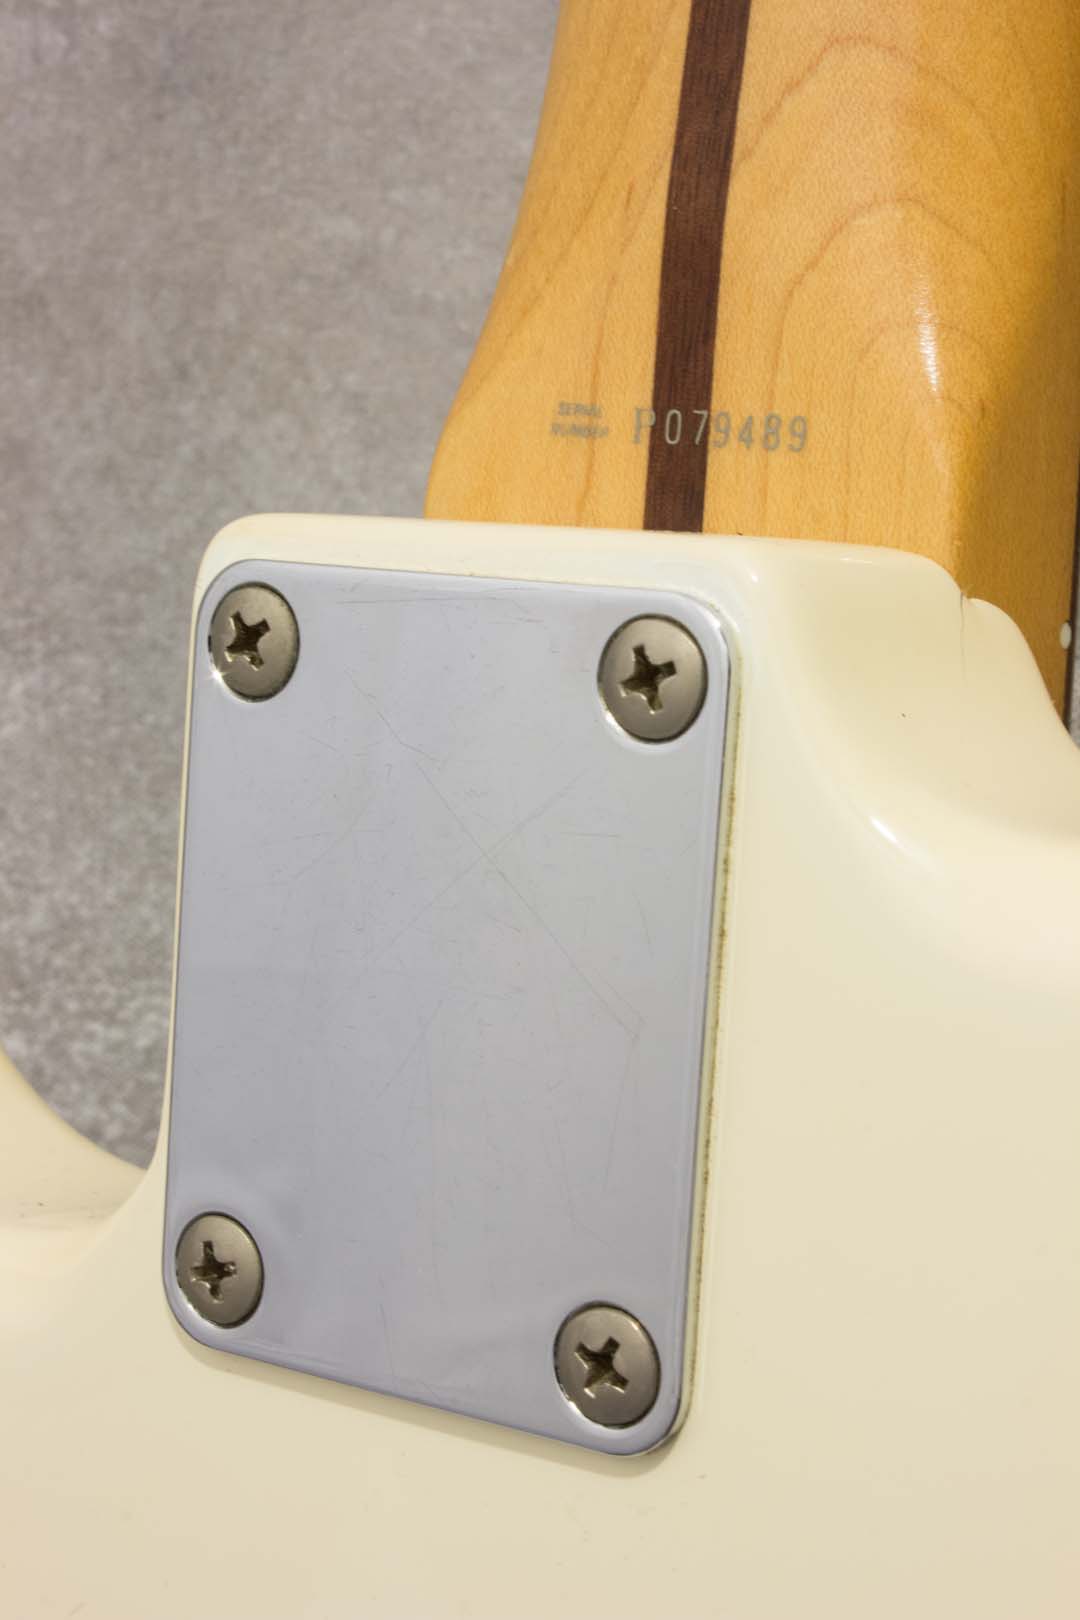 Fender Japan Standard Stratocaster ST43 Olympic White 2000